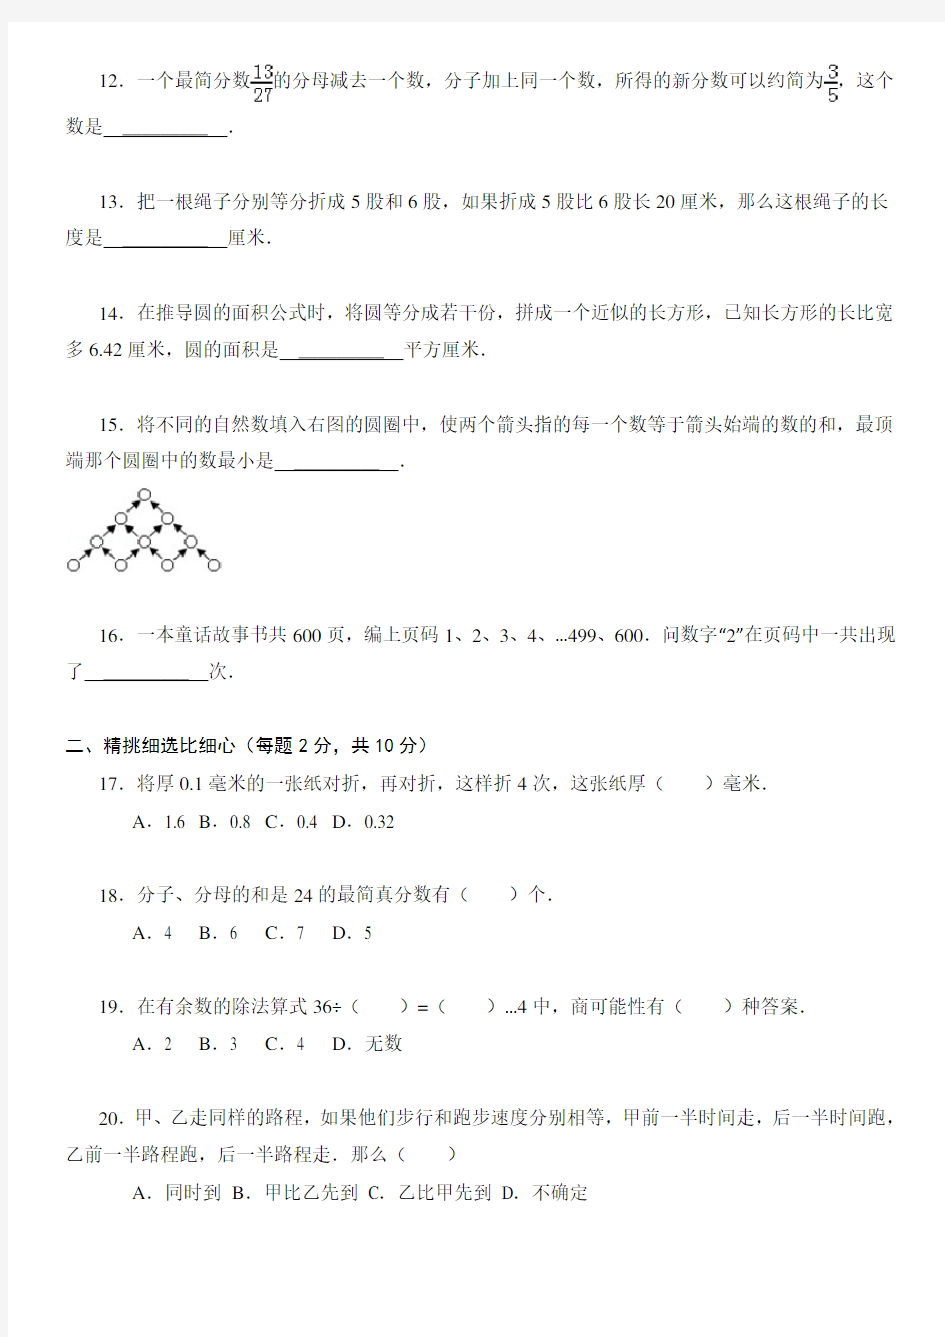 武汉市某重点初中初一招生分班考试数学试卷(附详细解析)